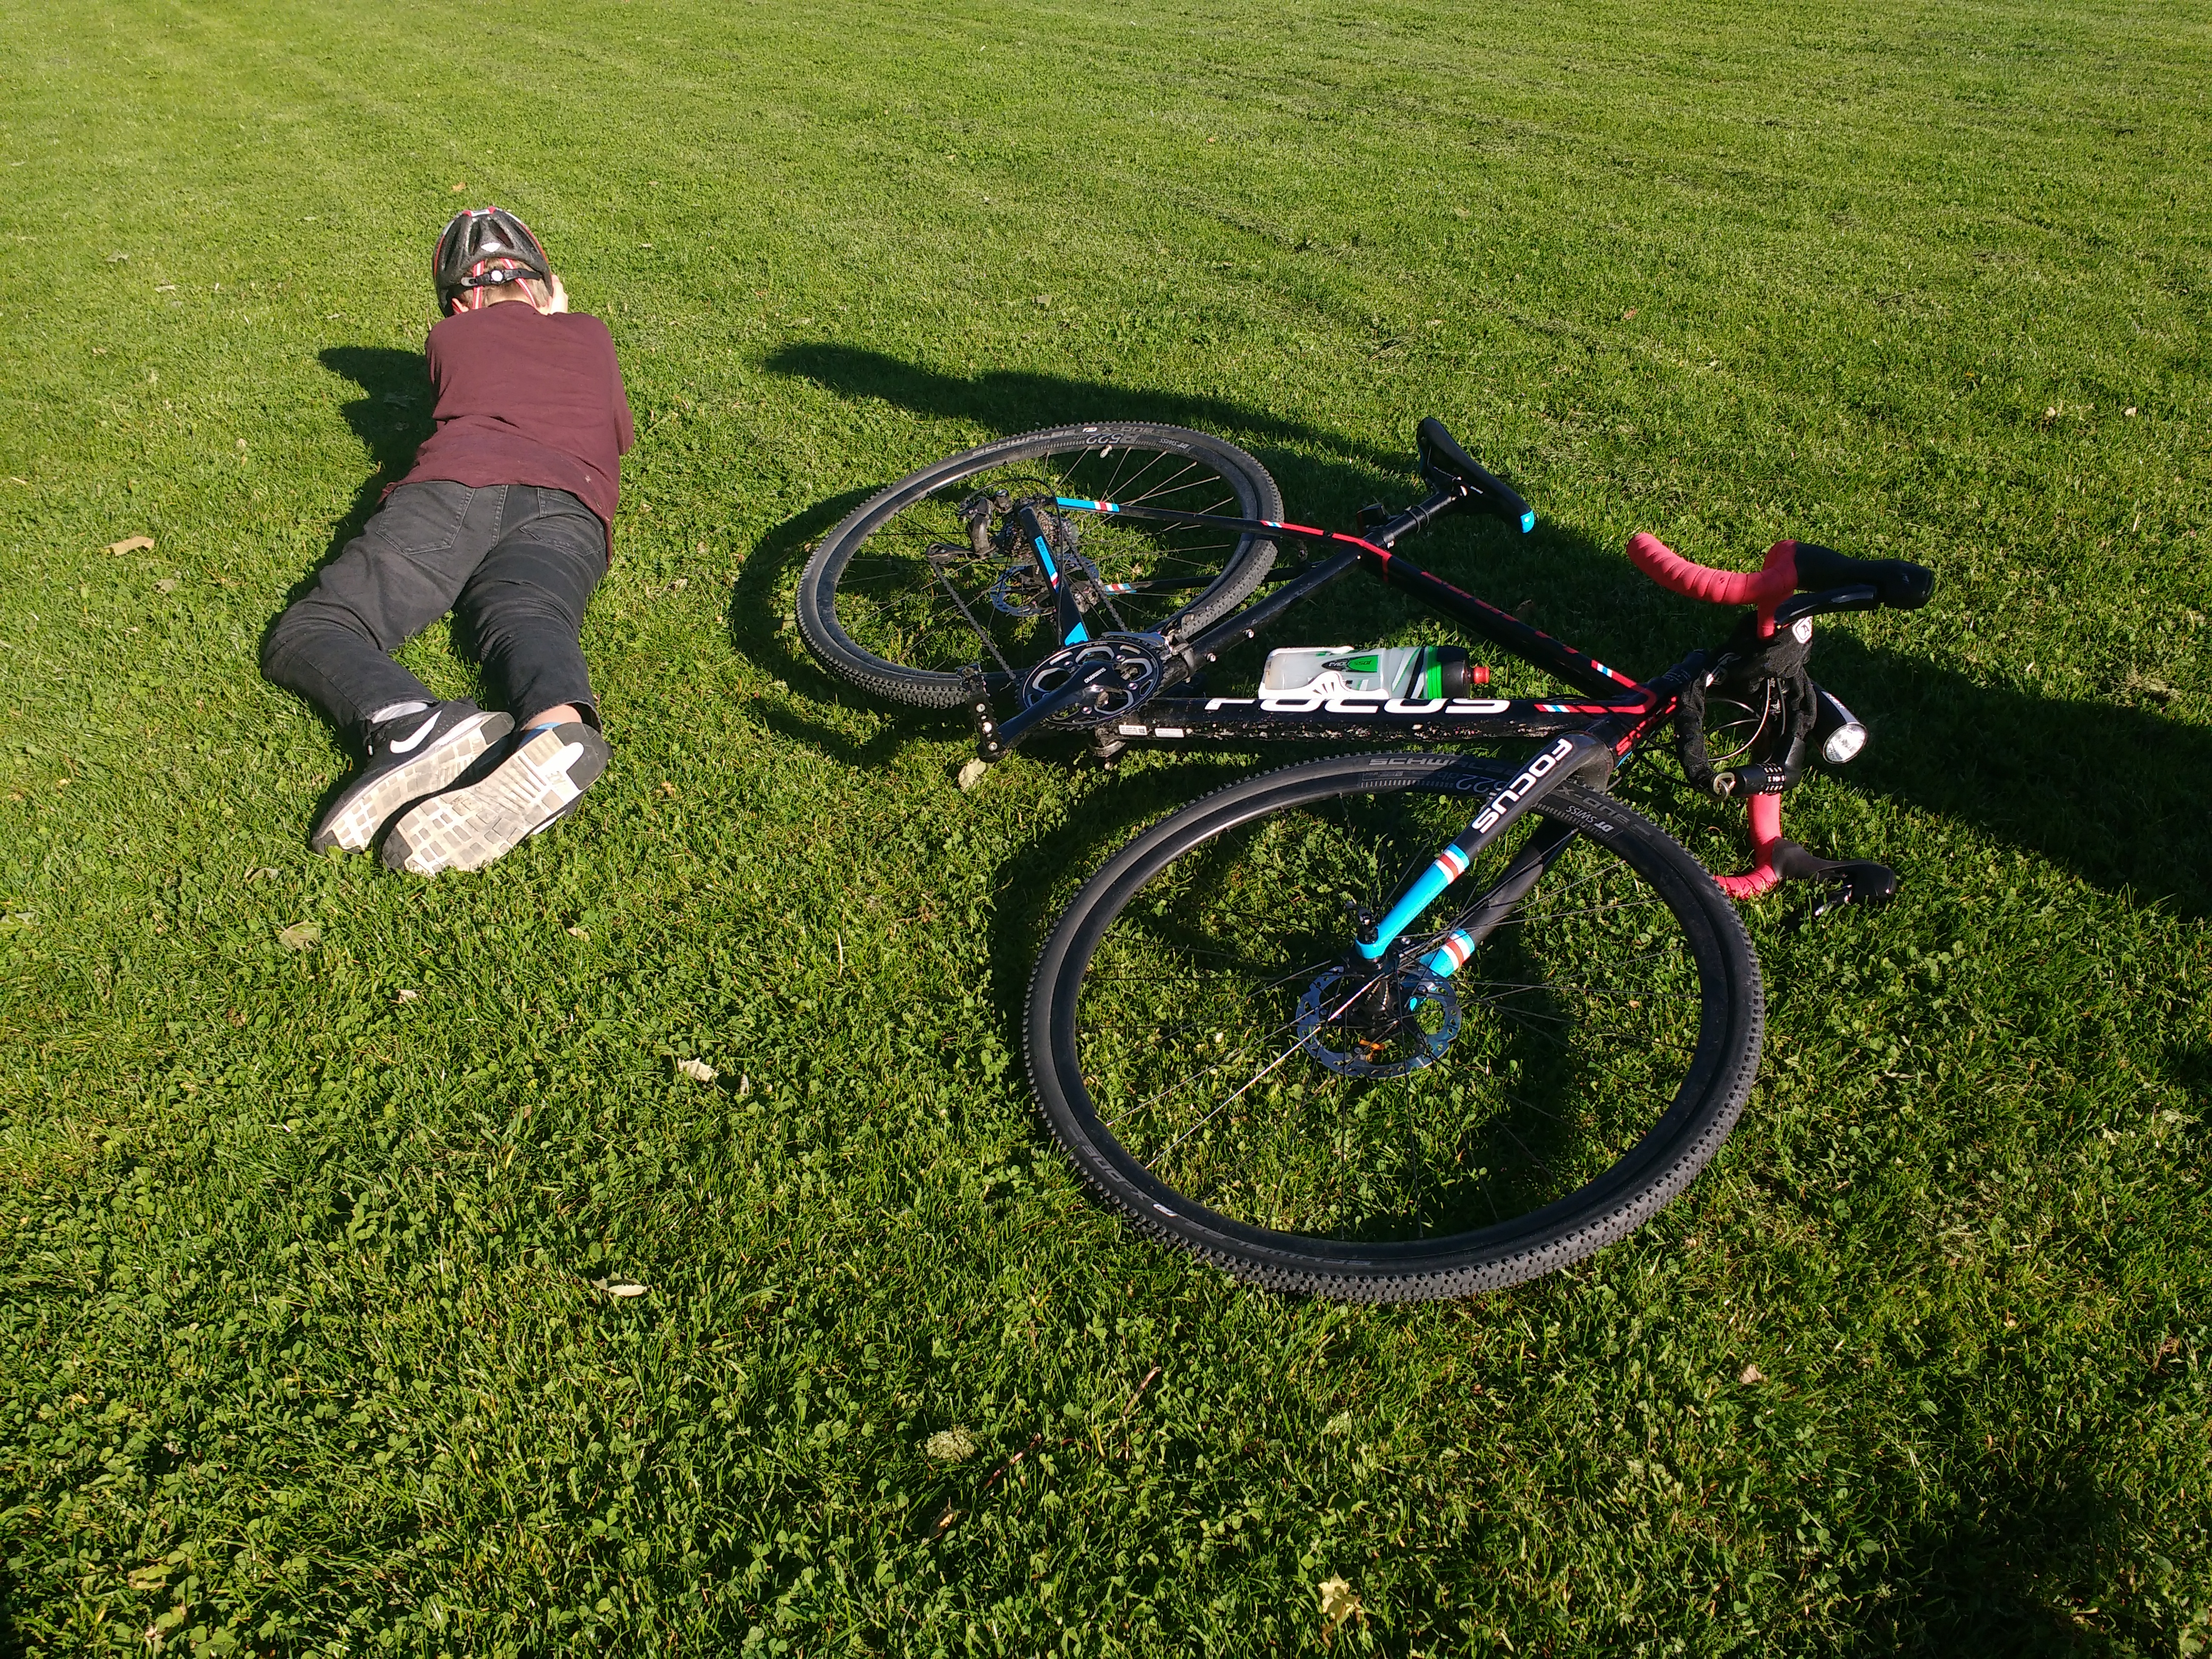 Junge und sein Fahrrad liegen auf einer Wiese in der Sonne.